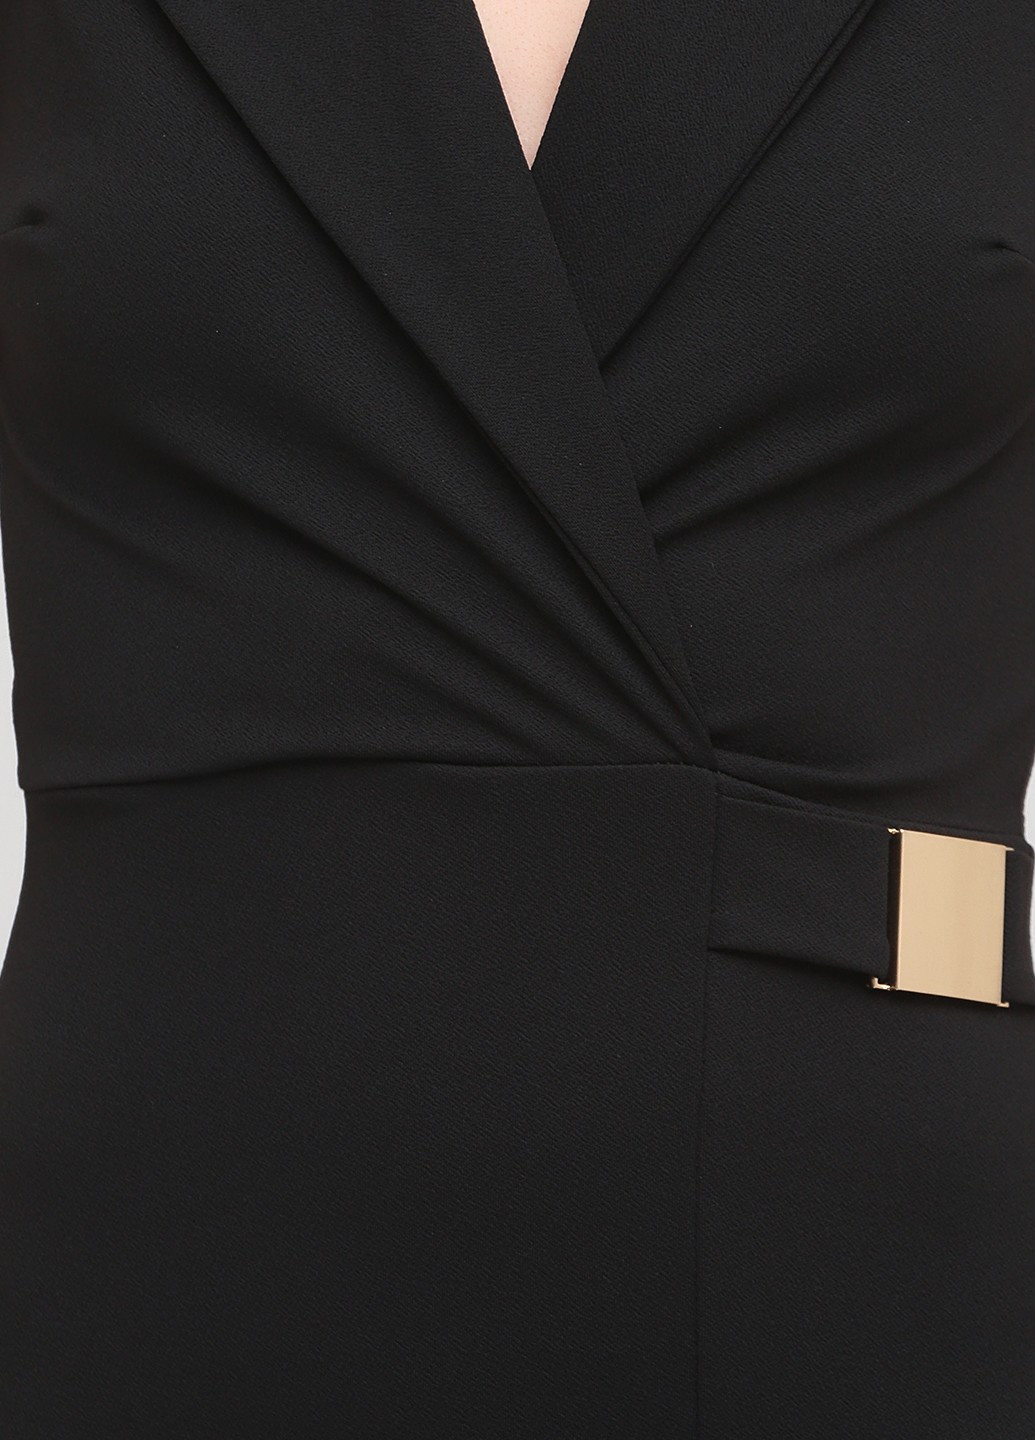 Черное деловое платье платье-жакет, на запах Jessica Wright однотонное